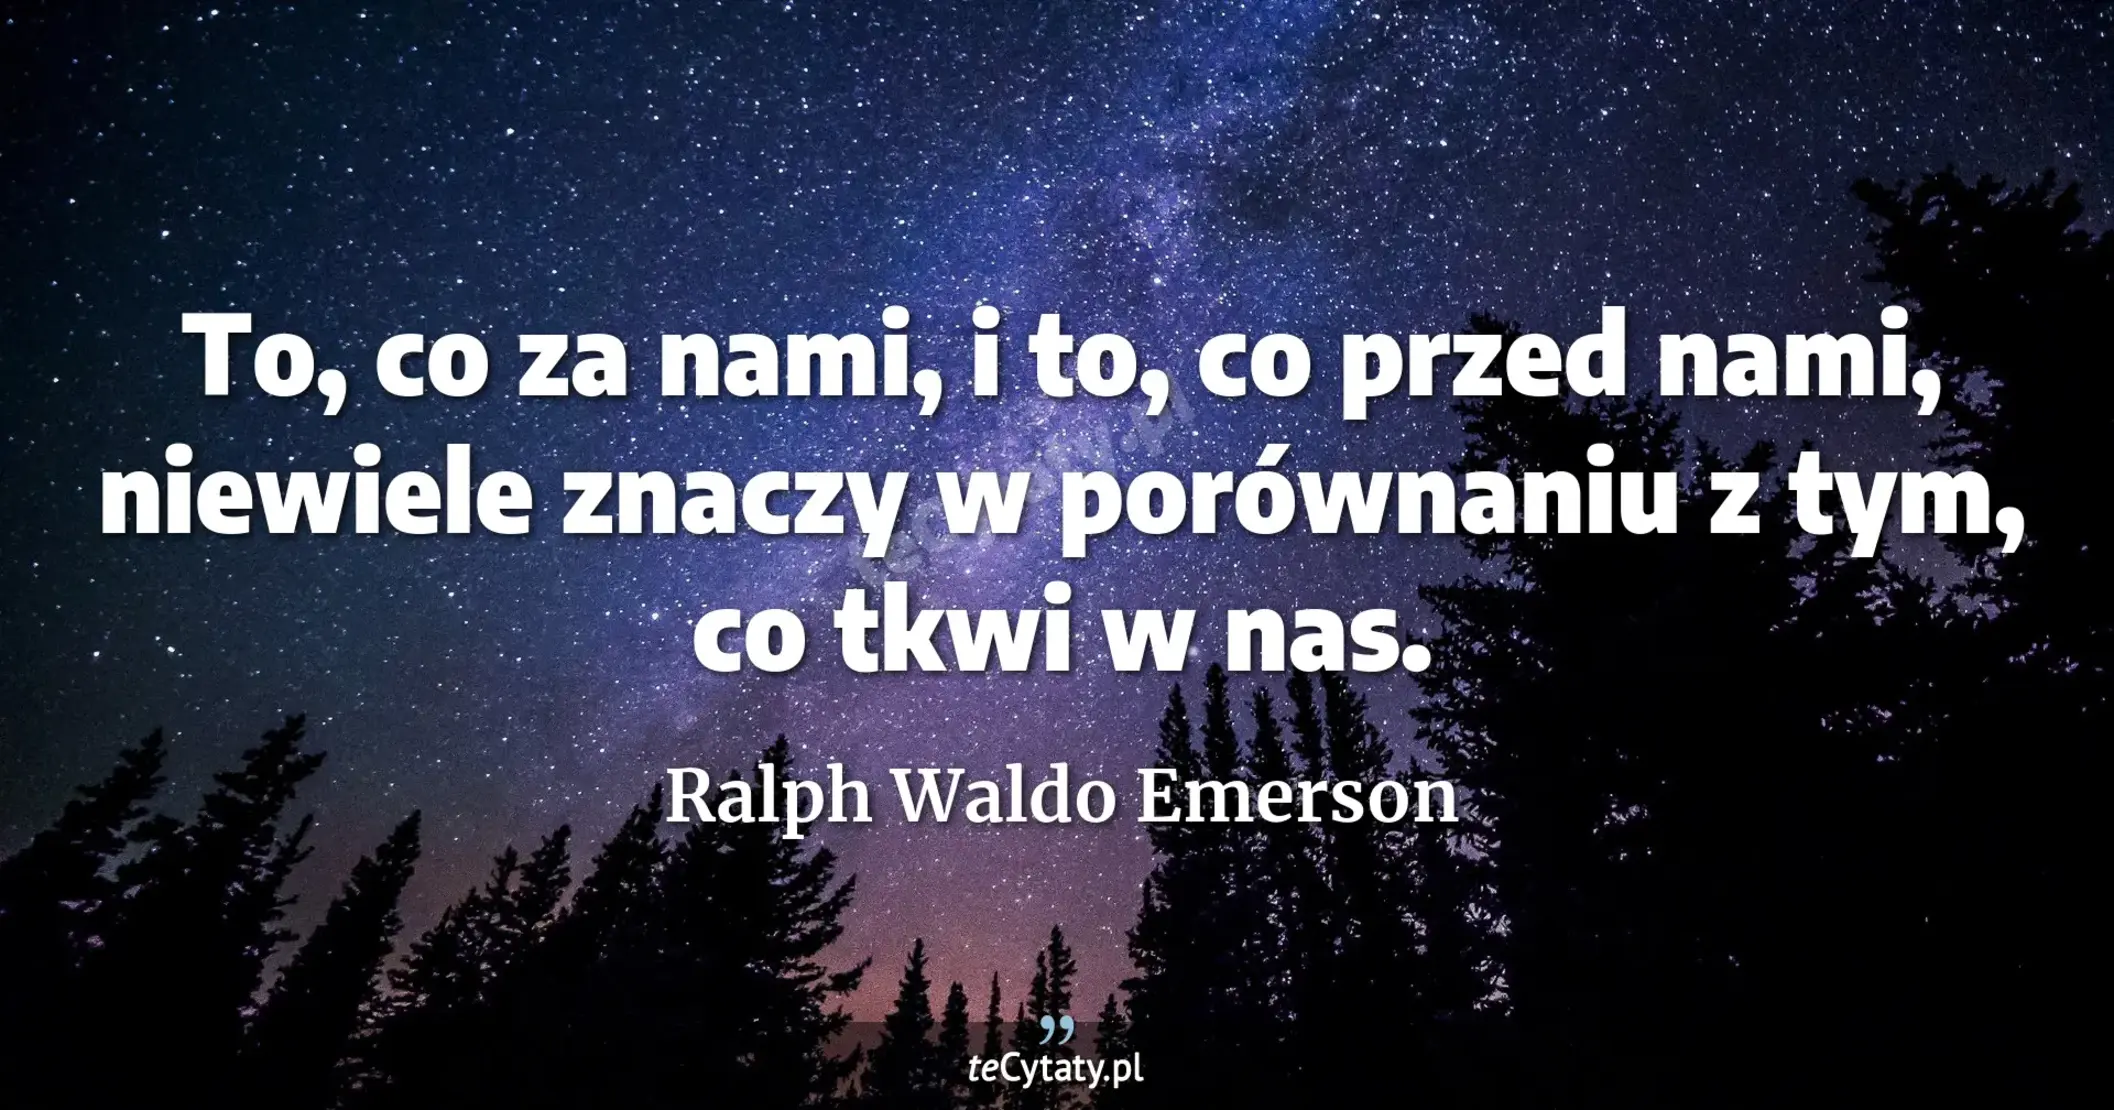 To, co za nami, i to, co przed nami, niewiele znaczy w porównaniu z tym, co tkwi w nas. - Ralph Waldo Emerson